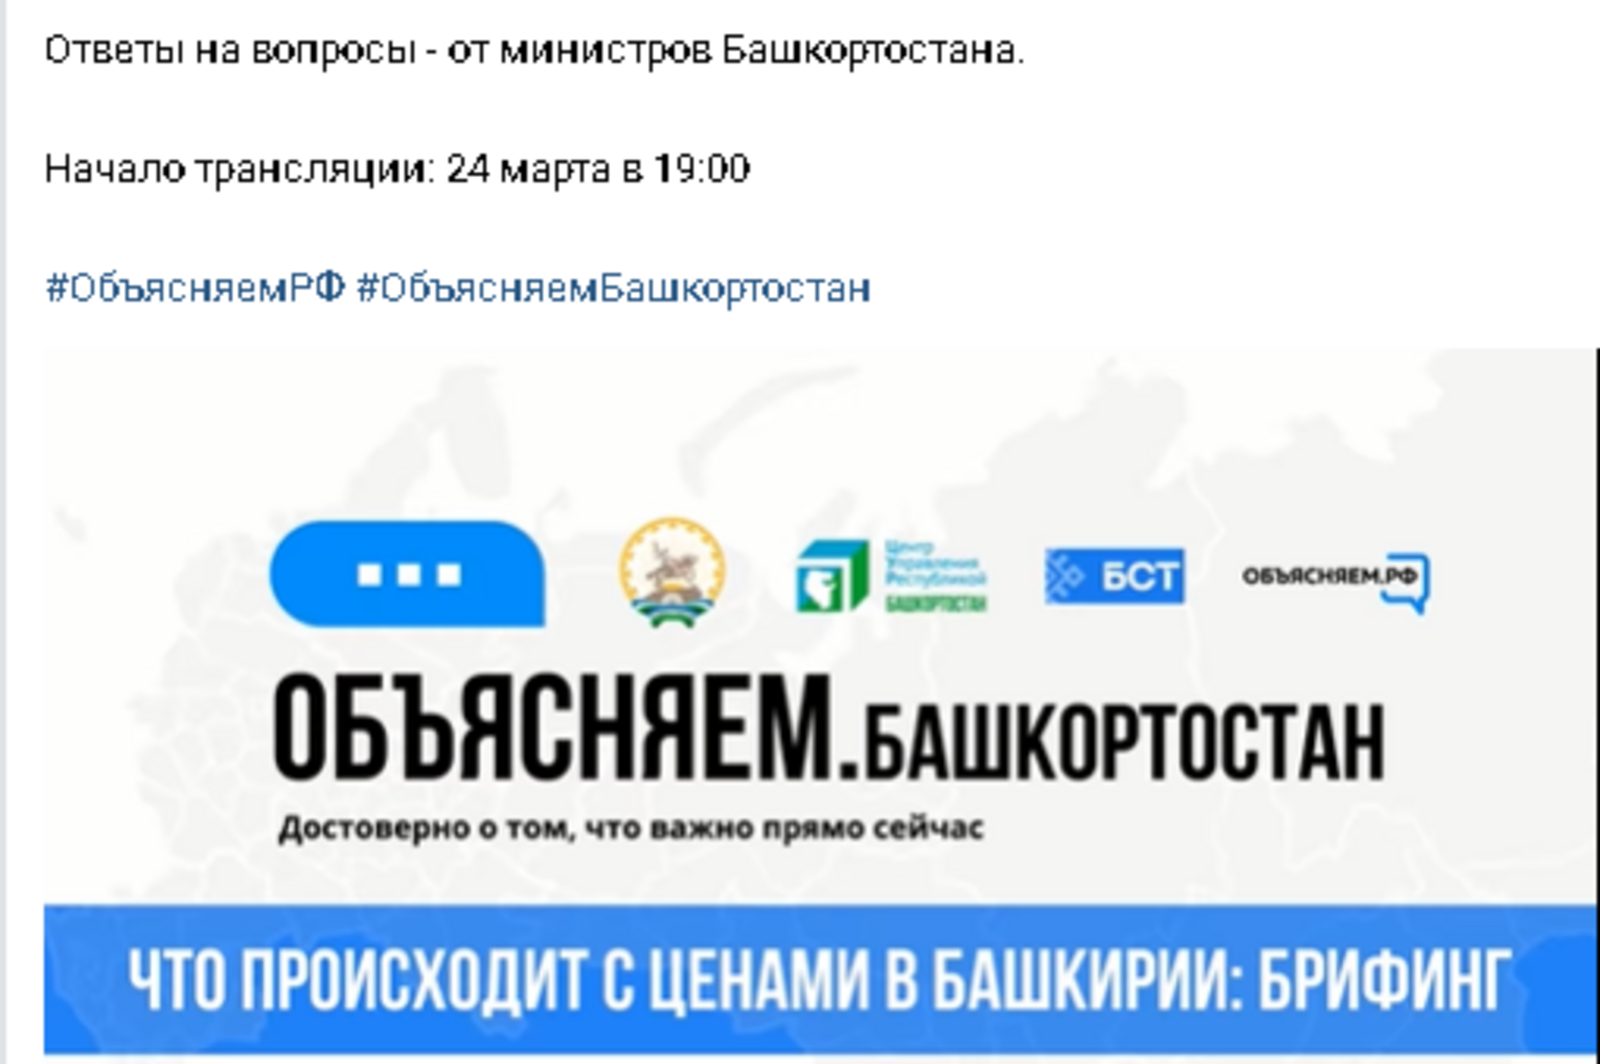 Брифинг на телеканале БСТ в рамках проекта #Объясняем_Башкортостан: Сахар в республике есть